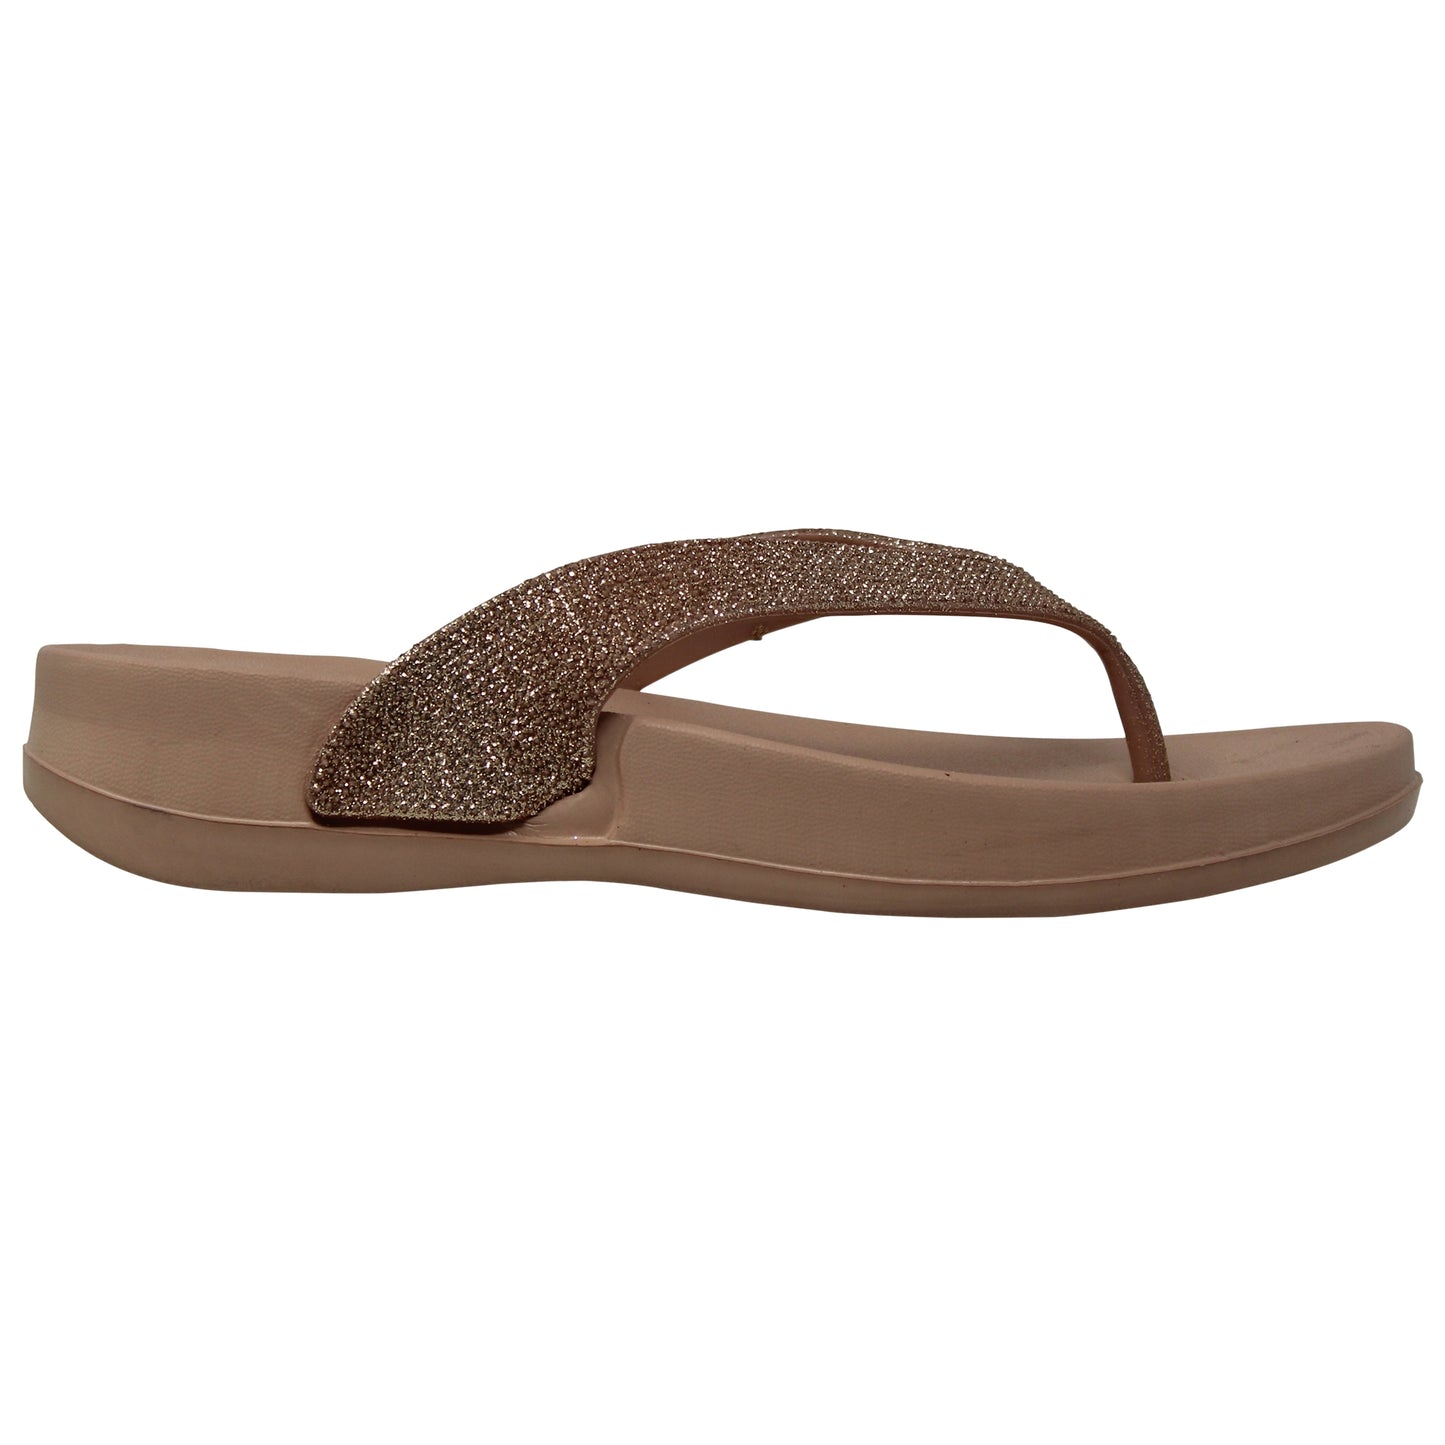 SOBEYO Womens Flat Platform Sandals Light-Weight Glitter Flip Flop Thong Gold